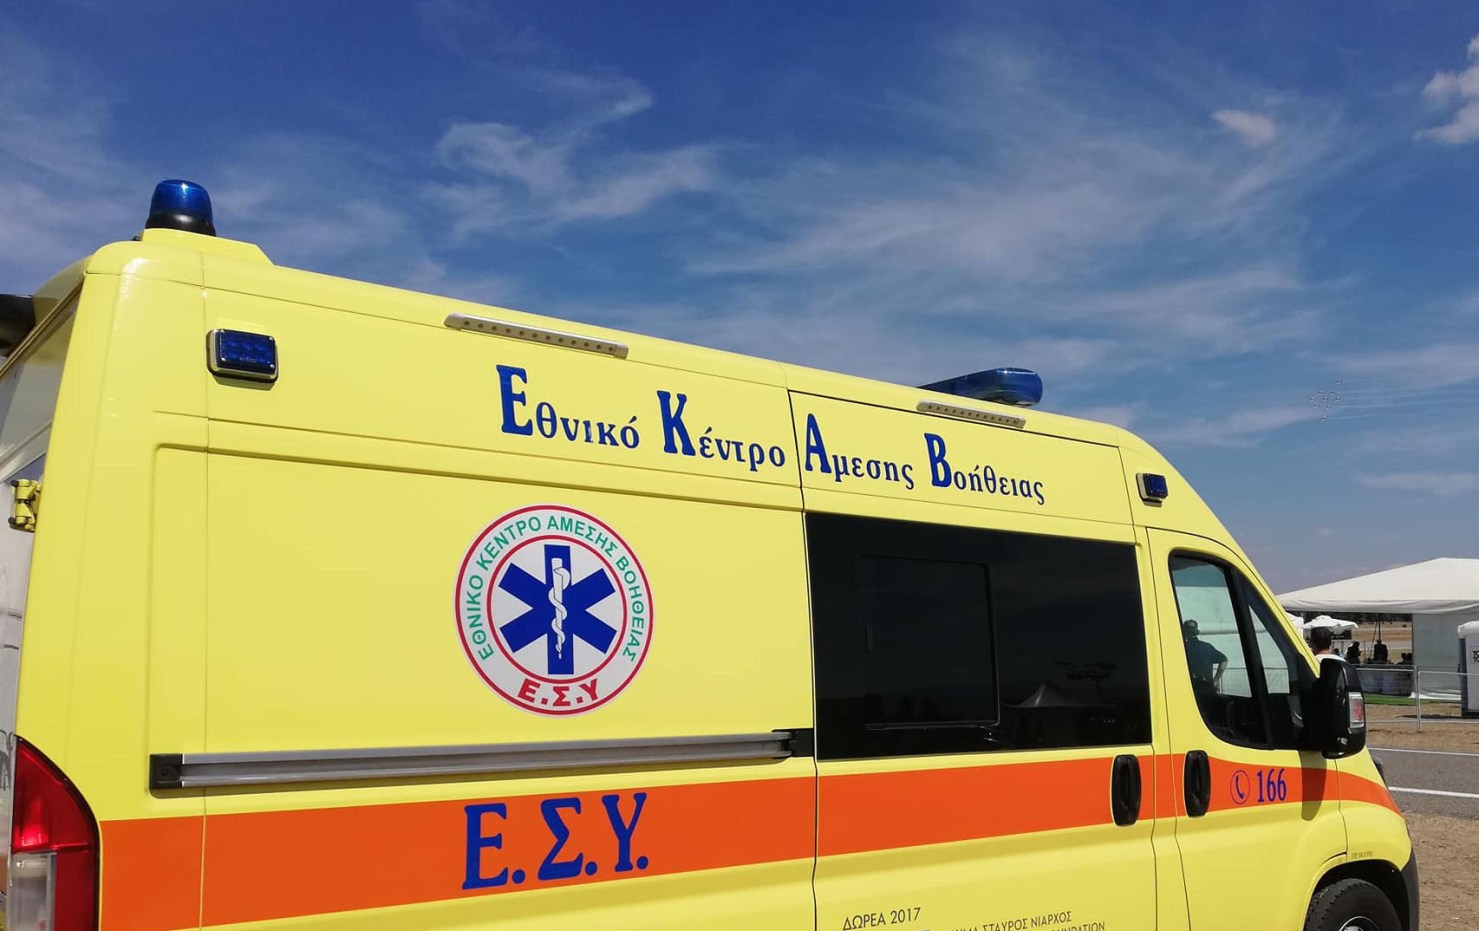 Κρήτη: Νεκρός ο 15χρονος που τραυματίστηκε σε εργατικό ατύχημα – Έφερε πολλαπλά τραύματα στα πόδια